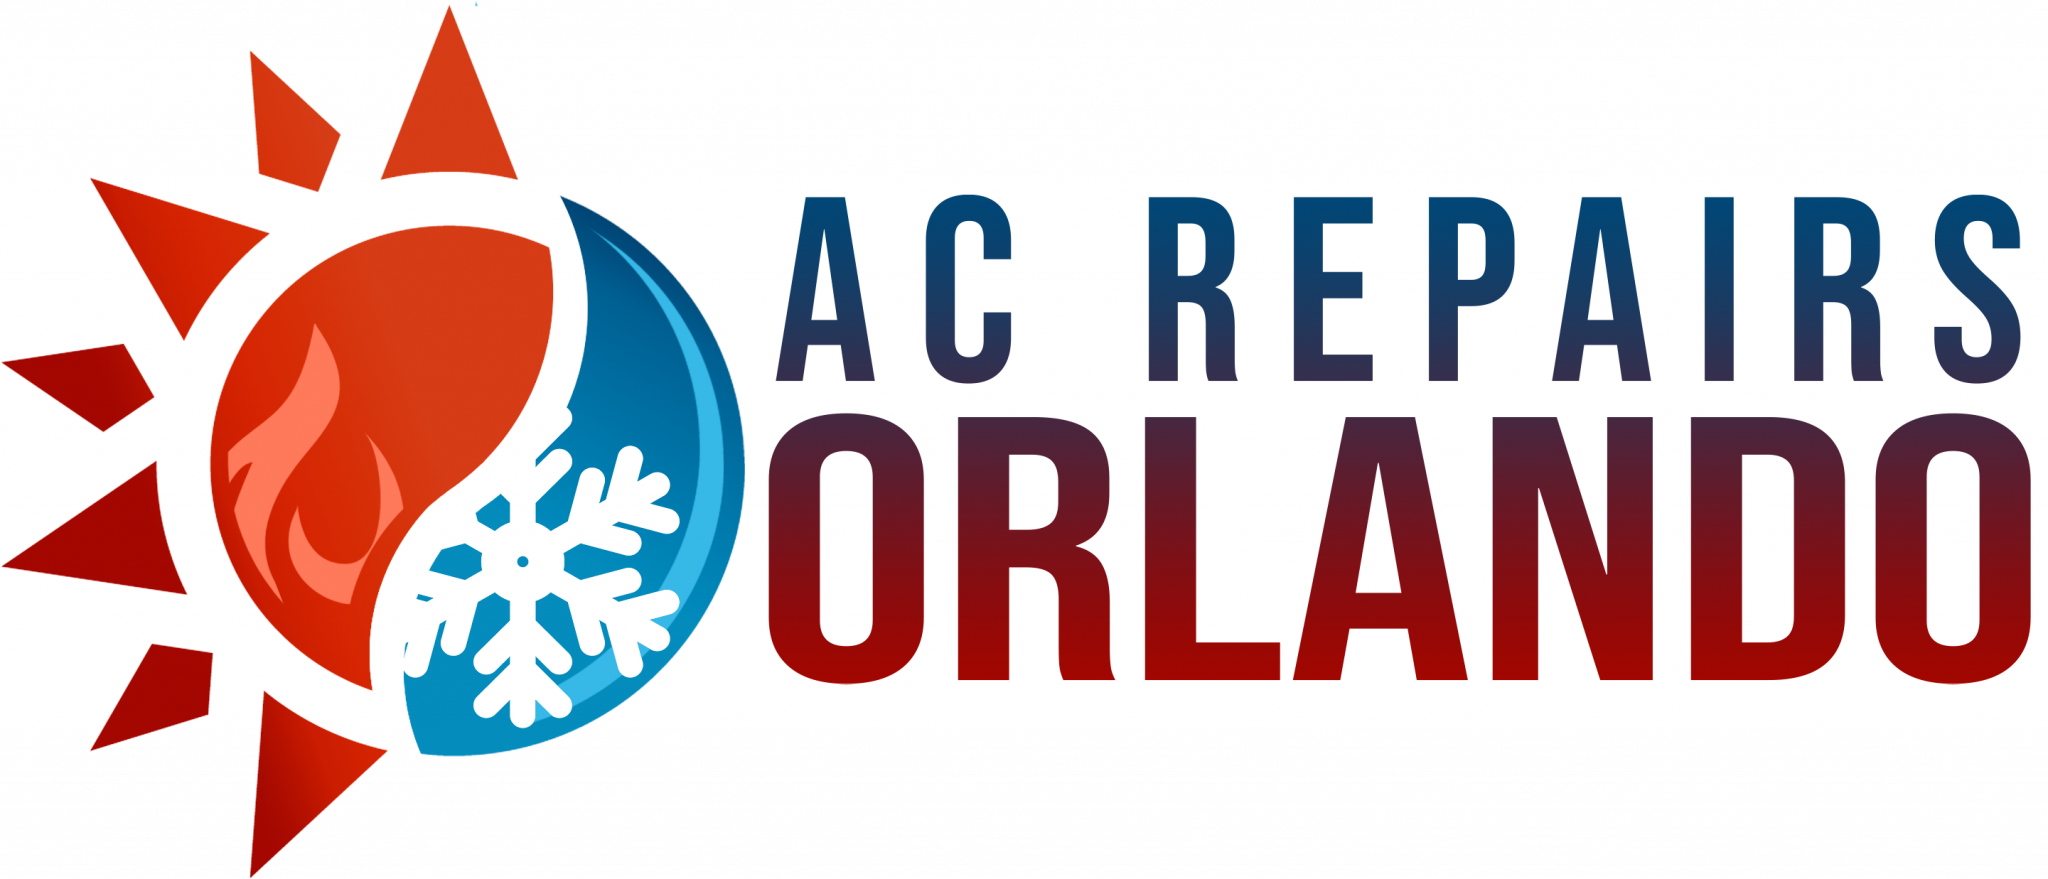 Ac Repair Orlando